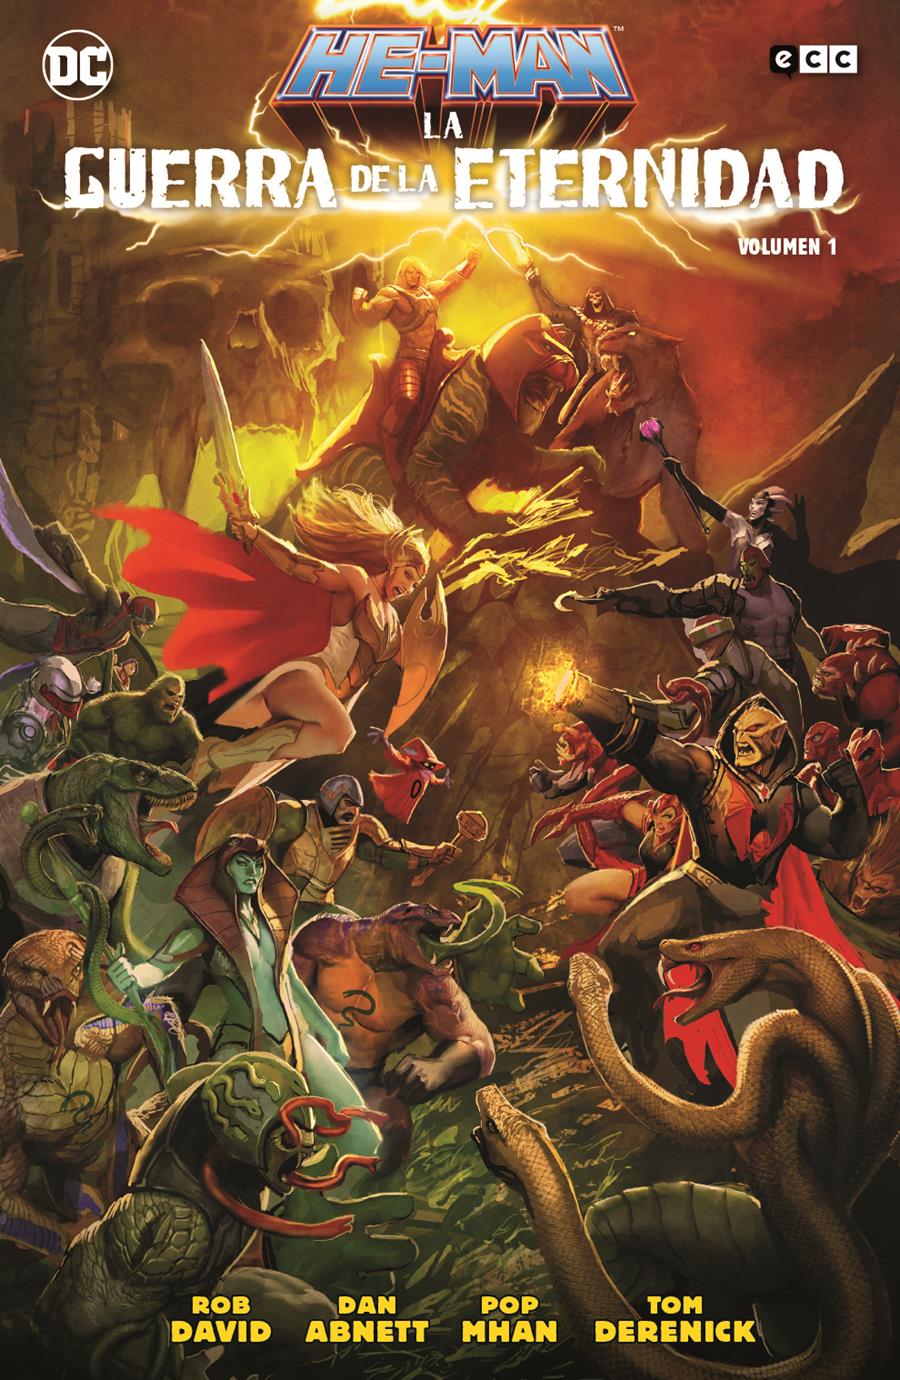 He-Man: La guerra de la eternidad vol. 1 de 2 | N1021-ECC43 | Dan Abnett / Pop Mhan / Rob David / Tom Derenick | Terra de Còmic - Tu tienda de cómics online especializada en cómics, manga y merchandising